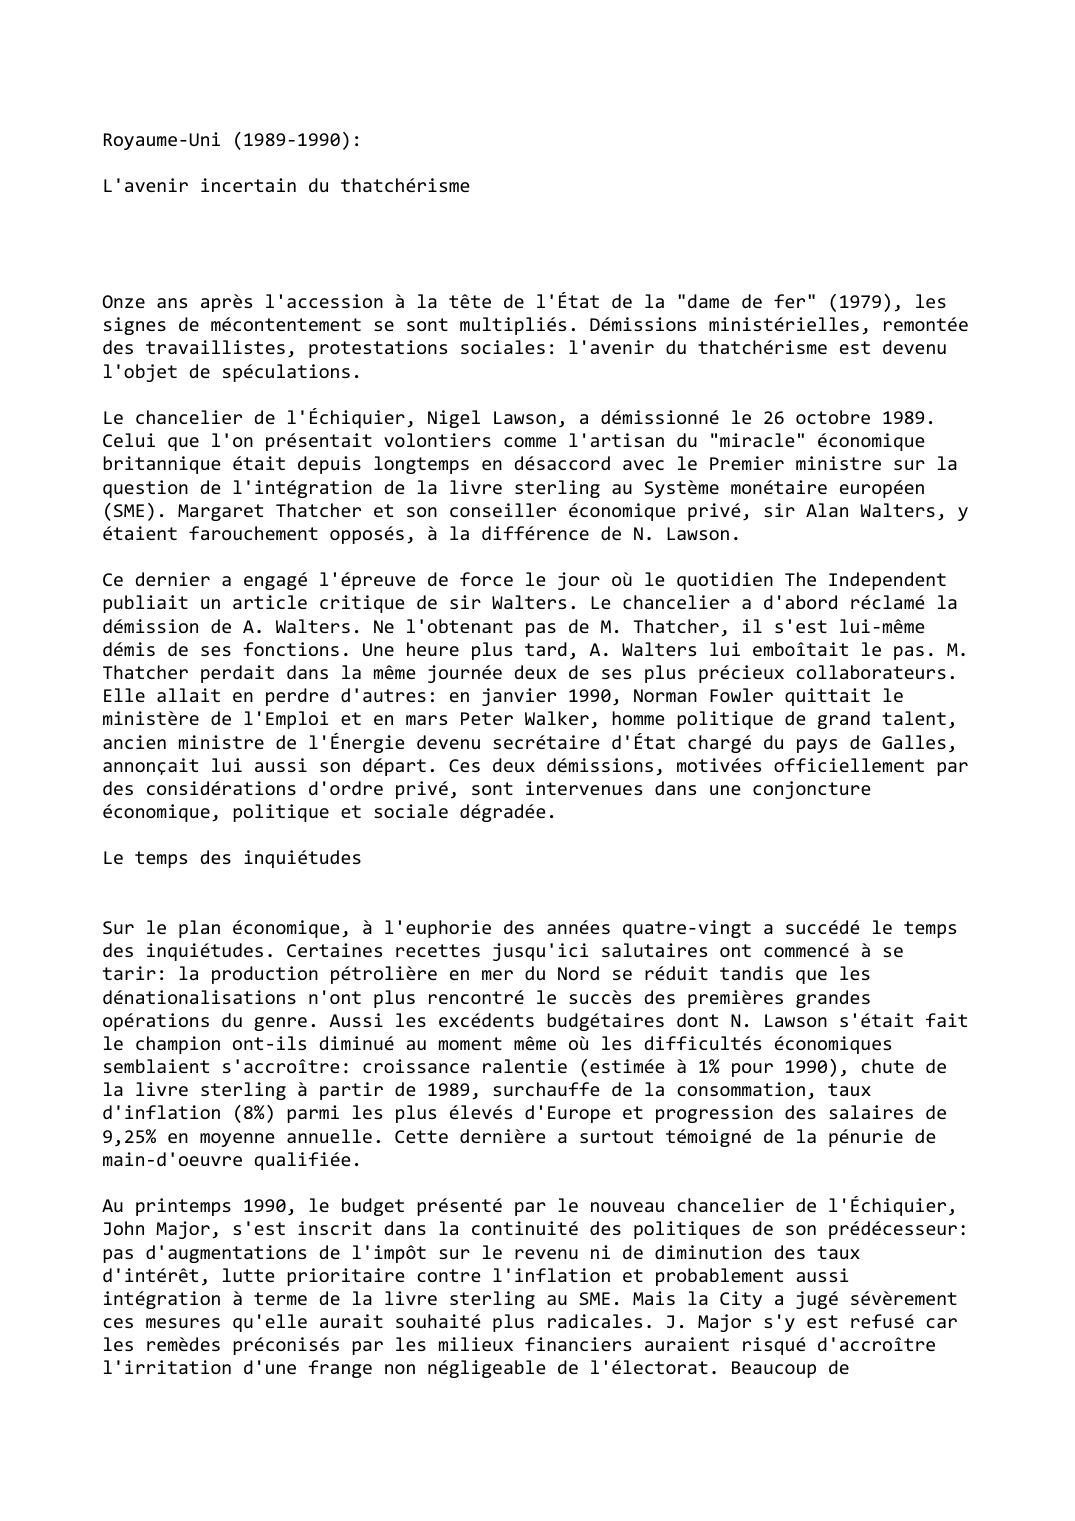 Prévisualisation du document Royaume-Uni (1989-1990):

L'avenir incertain du thatchérisme